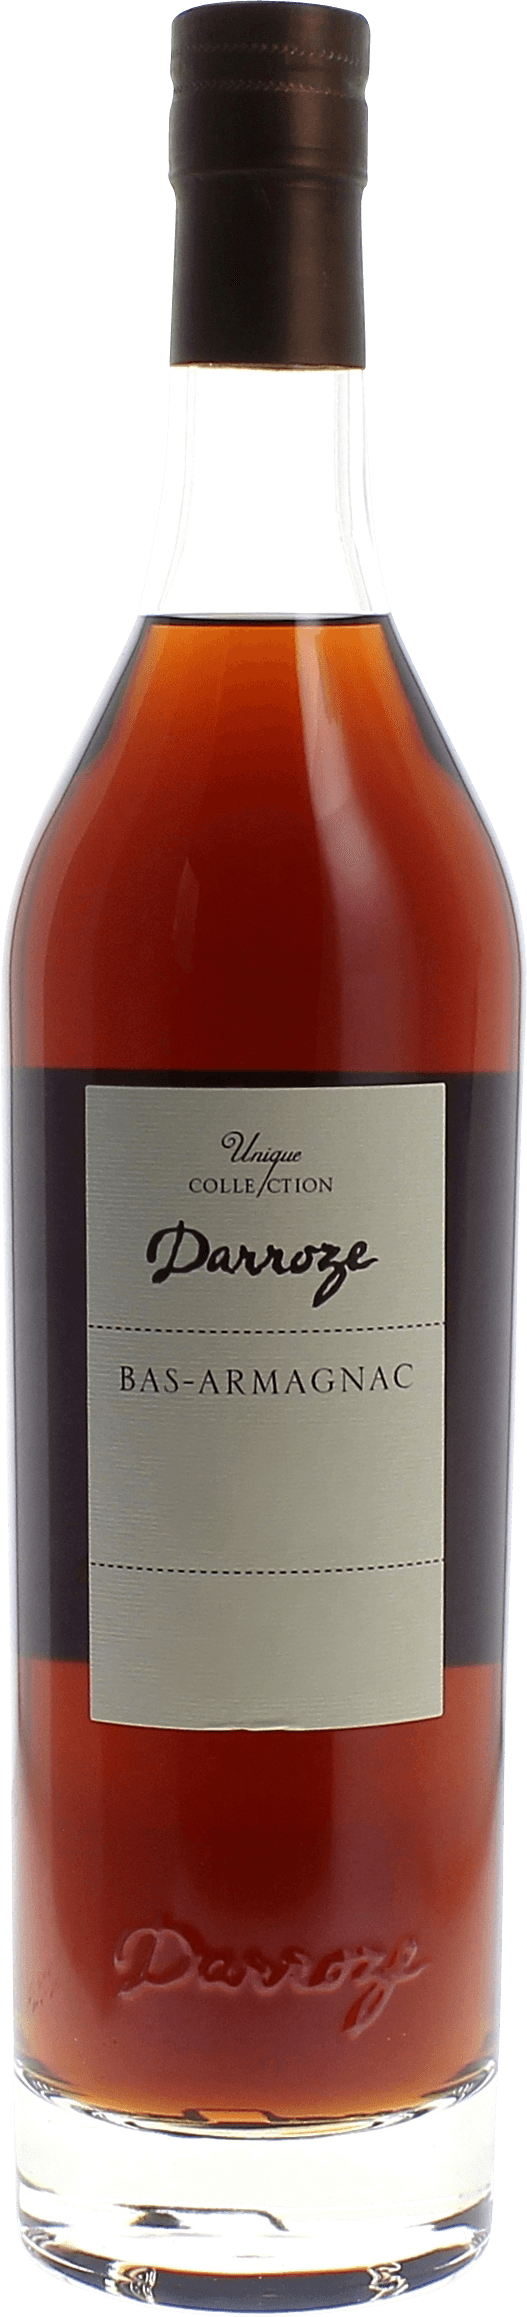 Domaine de couloume 48 1977  Bas Armagnac, DARROZE  Francis Bas Armagnac